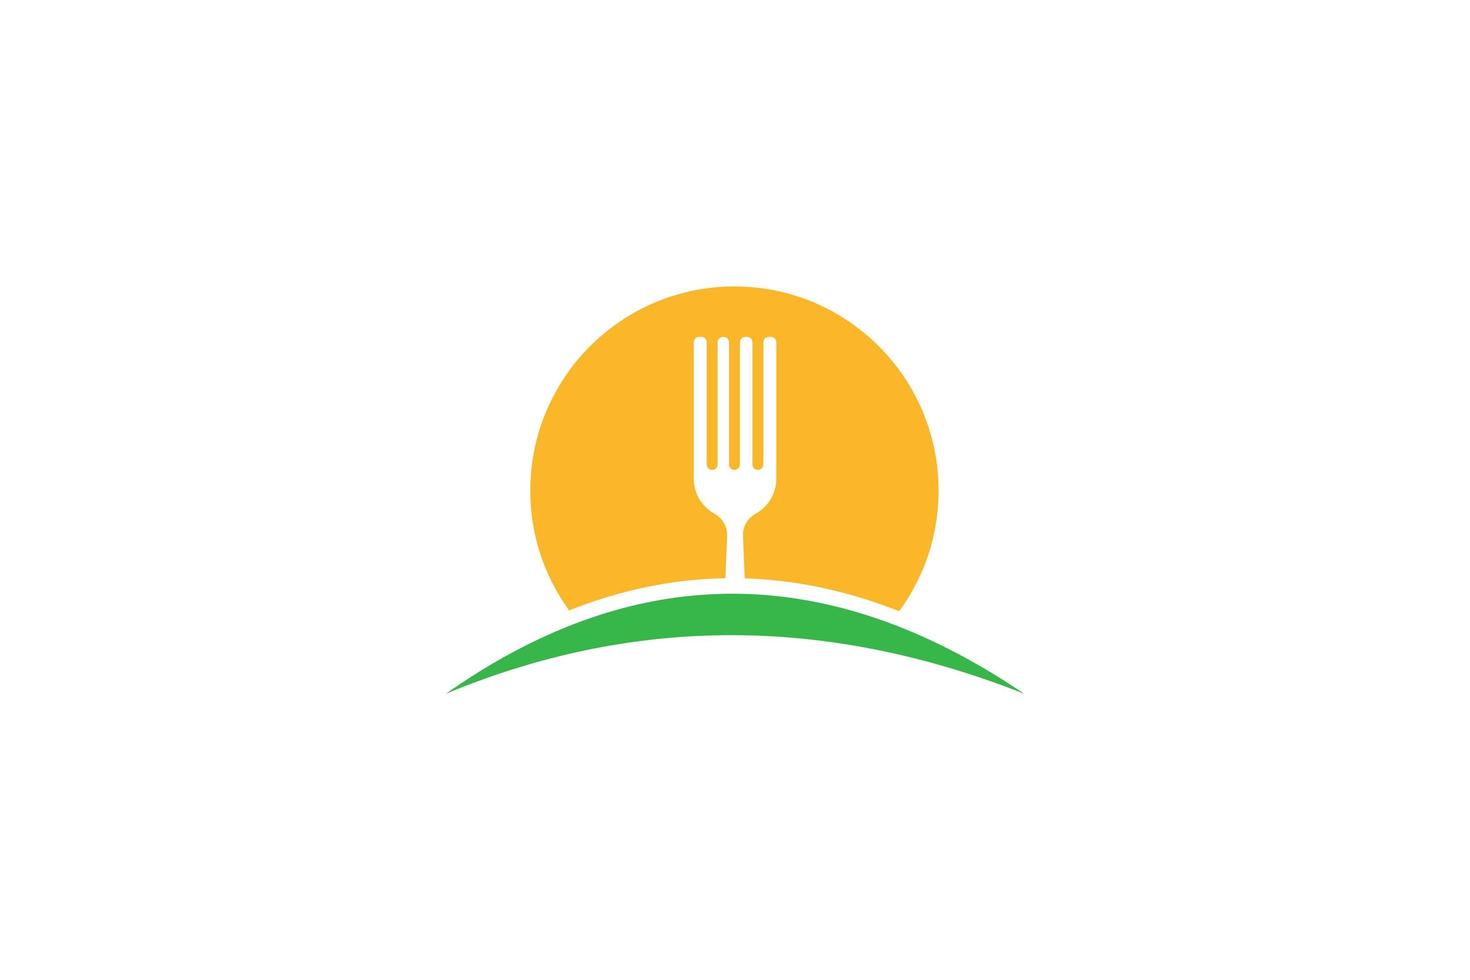 vettore di progettazione del modello di logo dell'alimento, illustrazione dell'icona